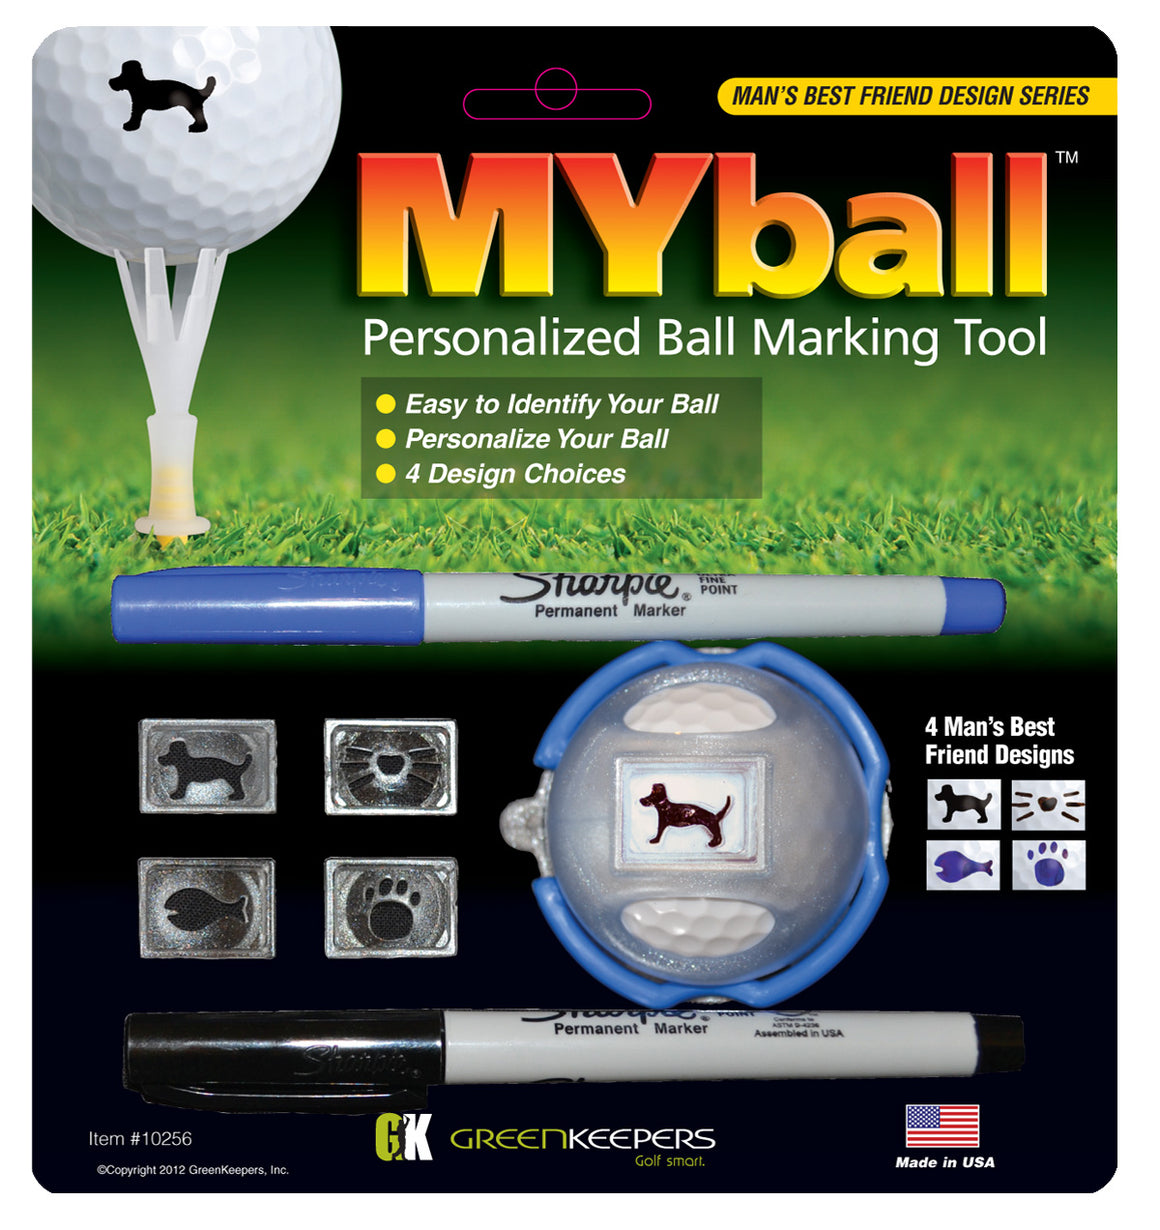 MYball (Man' Best Friend Design)